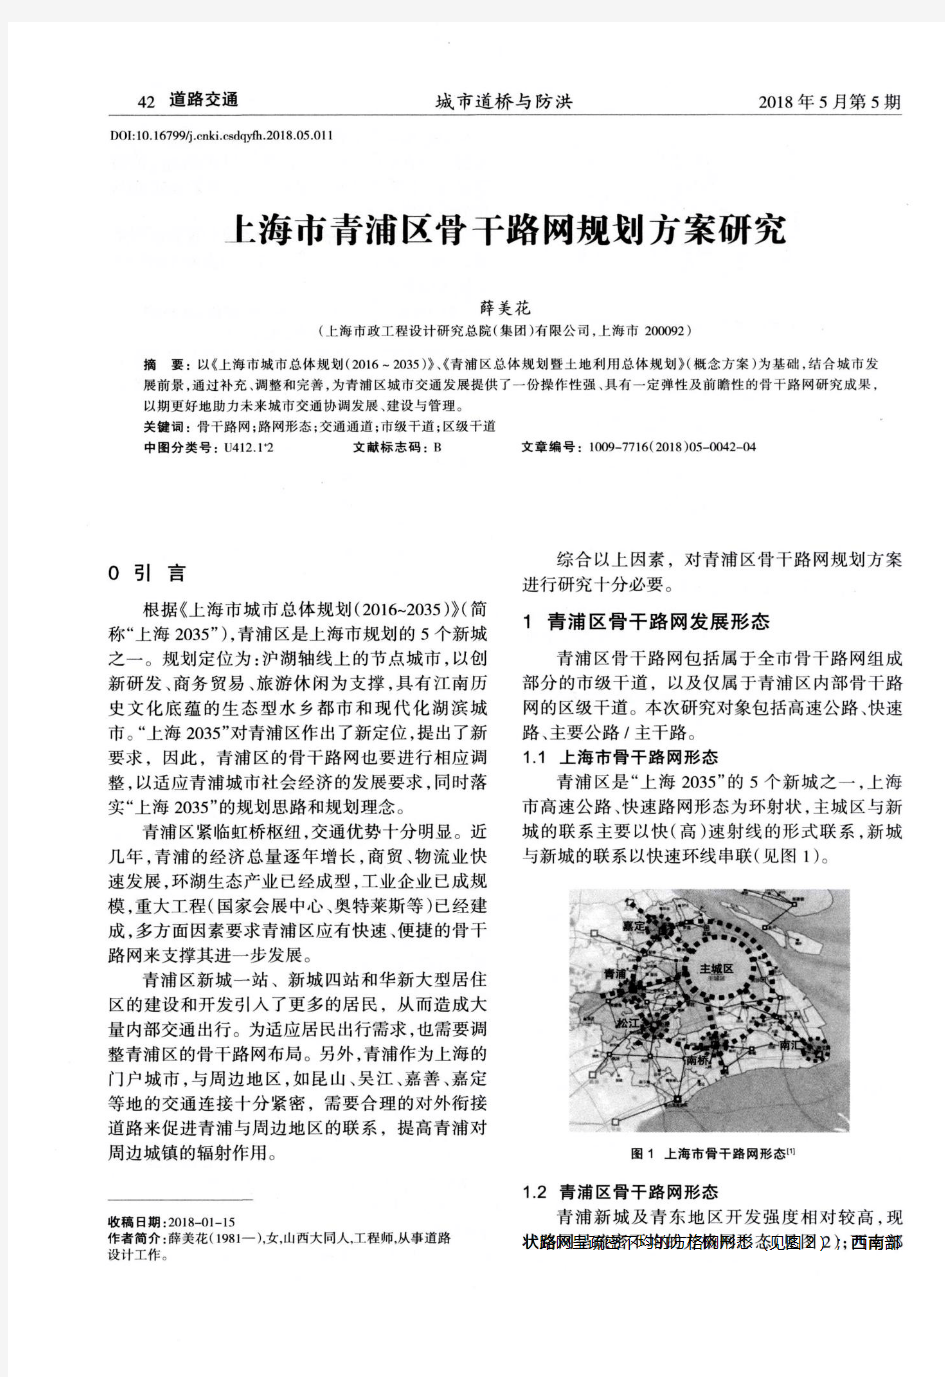 上海市青浦区骨干路网规划方案研究